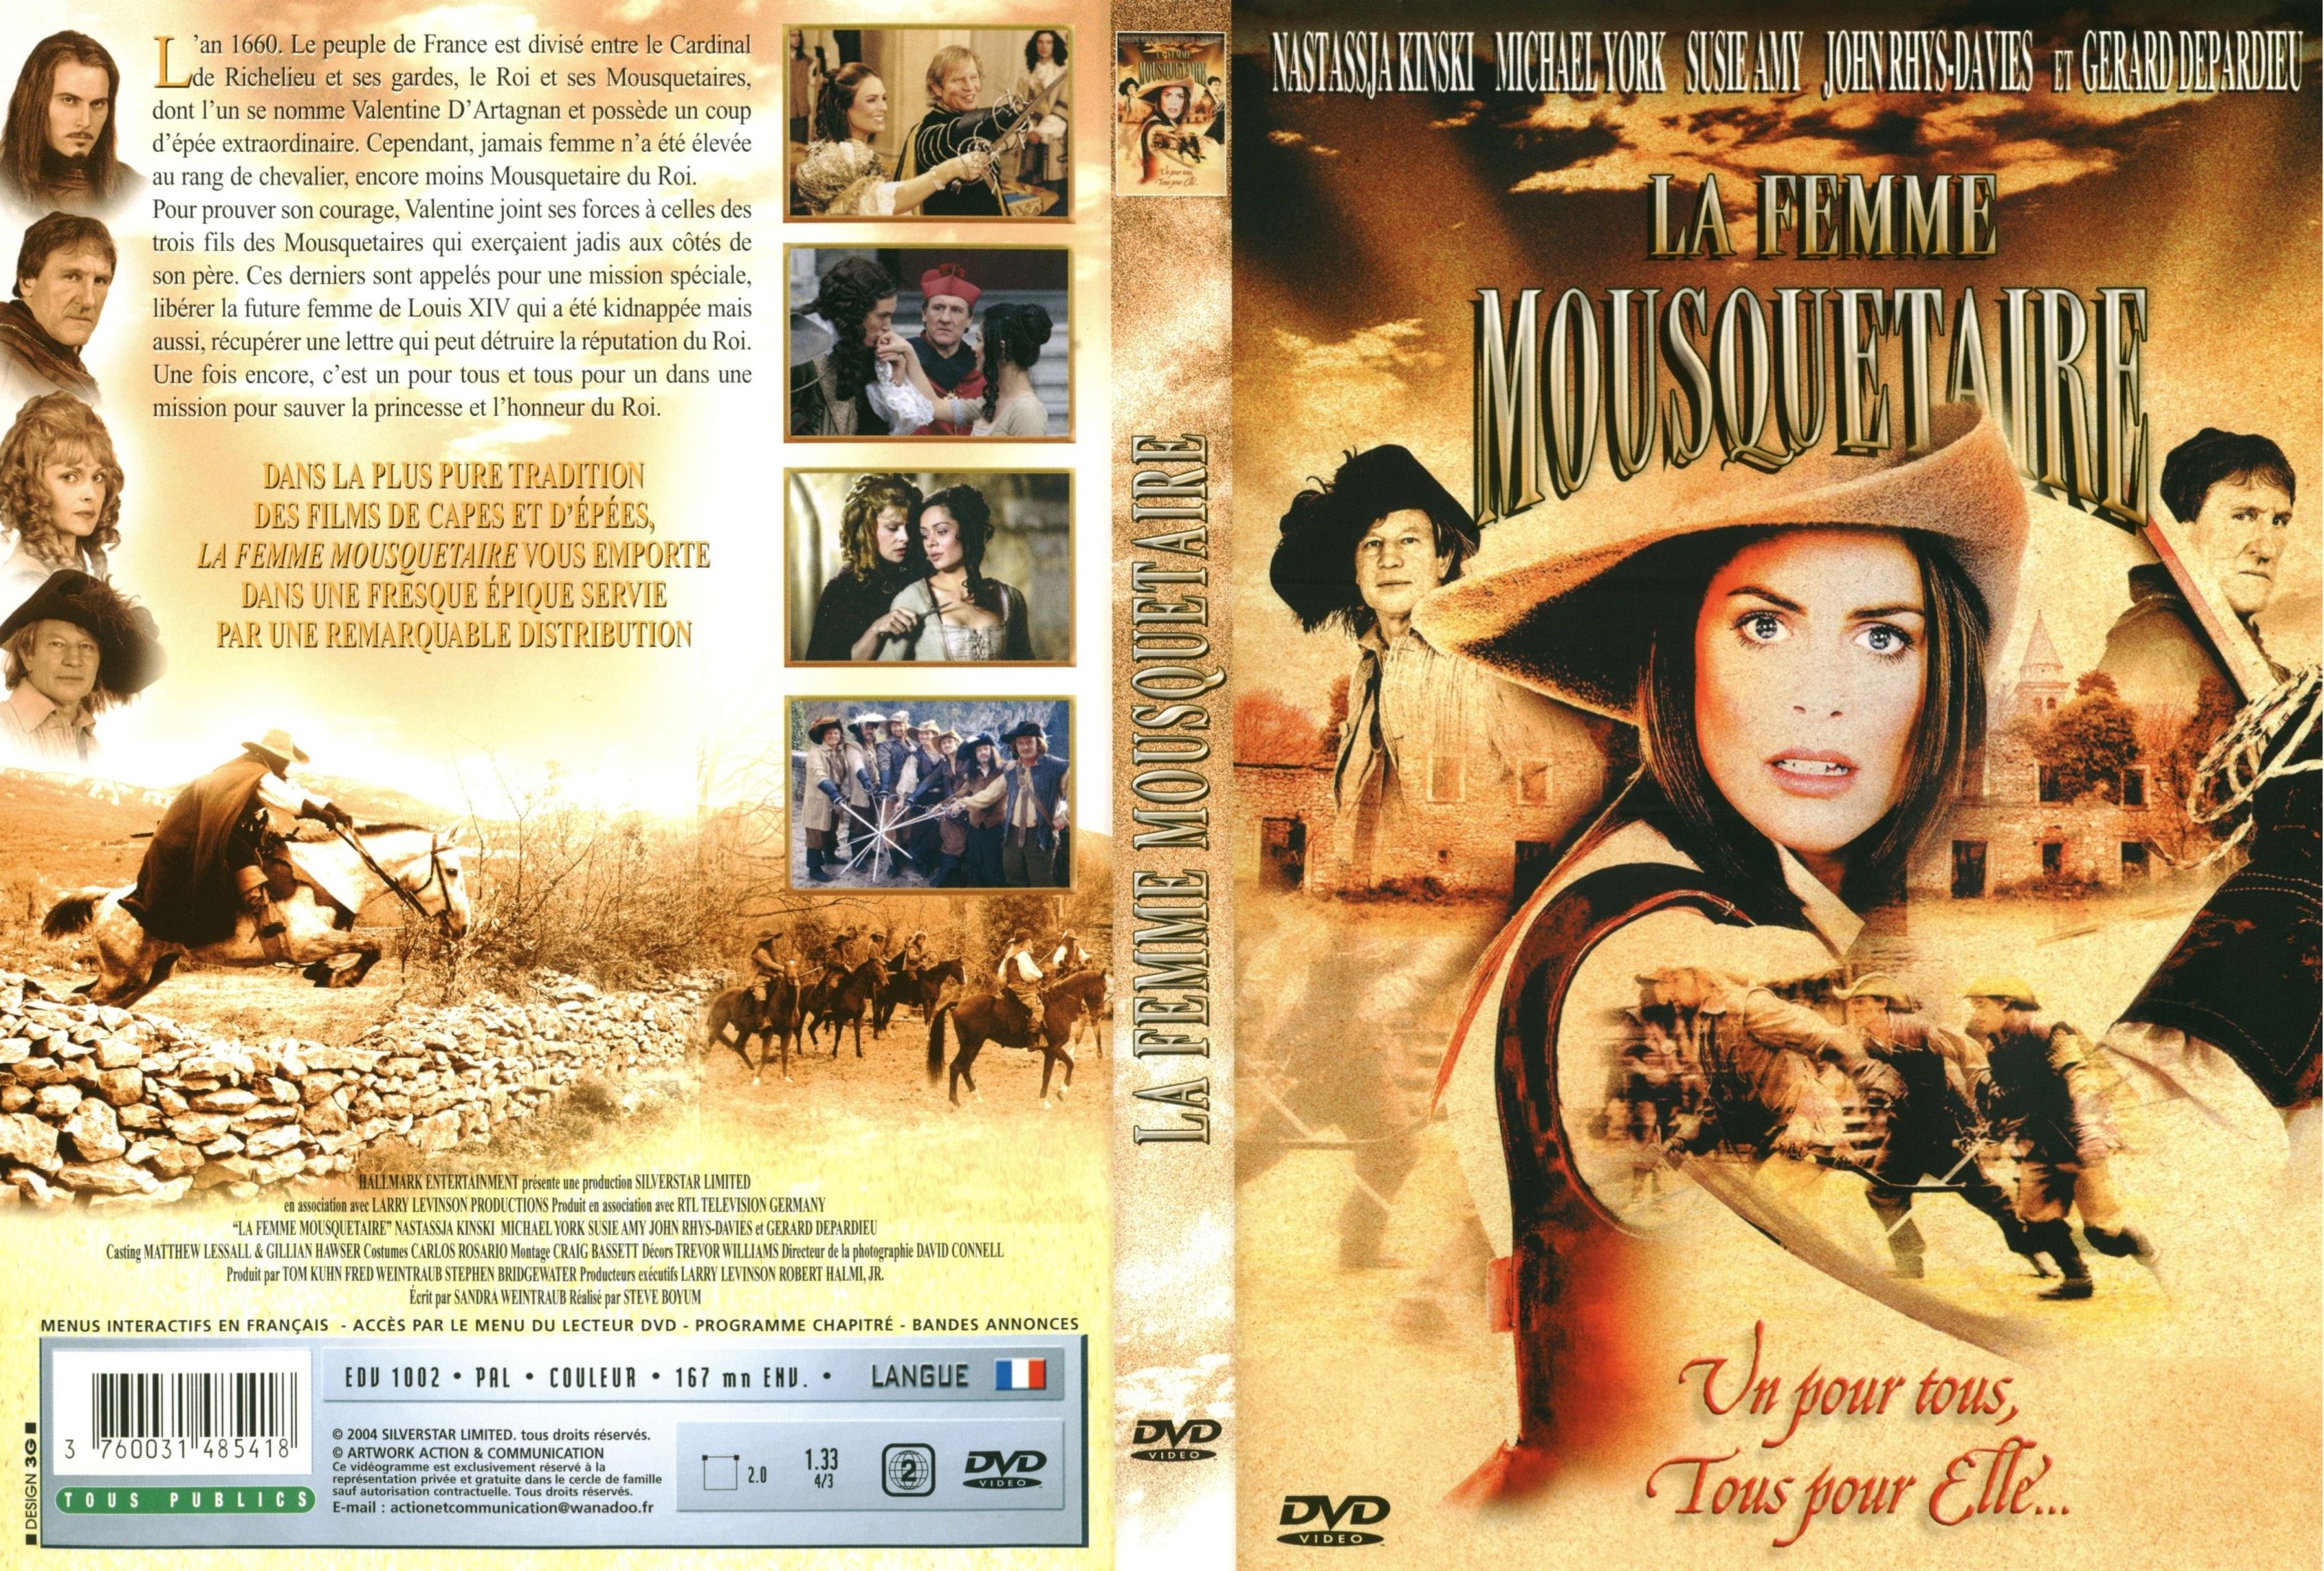 Jaquette DVD La femme mousquetaire